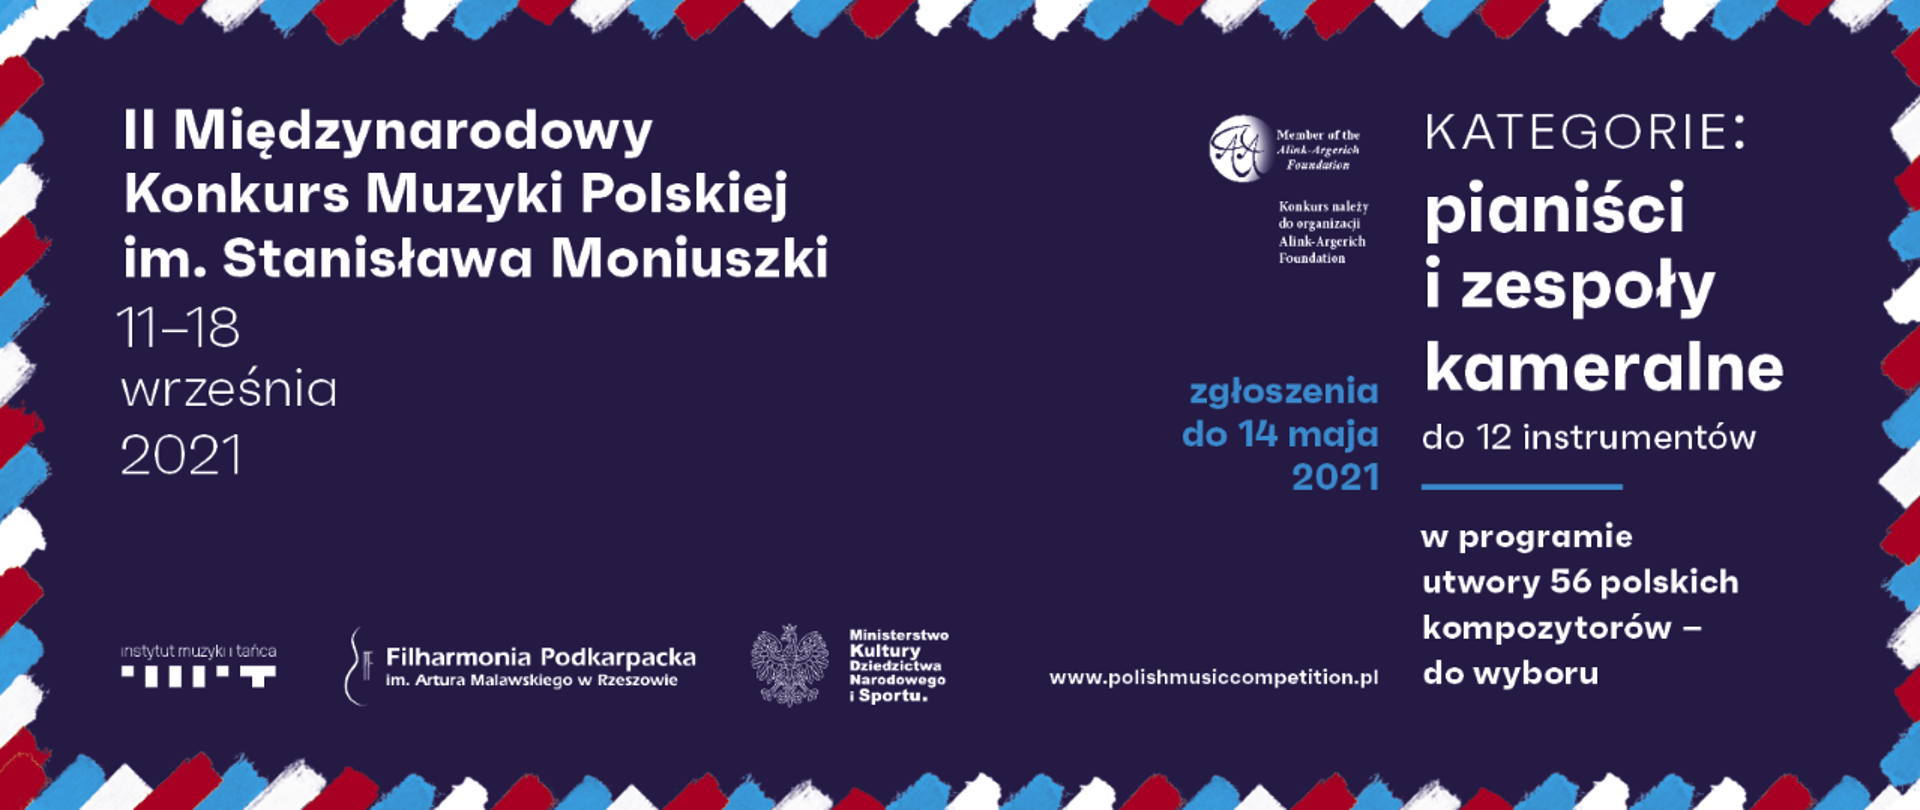 II Międzynarodowy Konkurs Muzyki Polskiej im. S. Moniuszki_baner